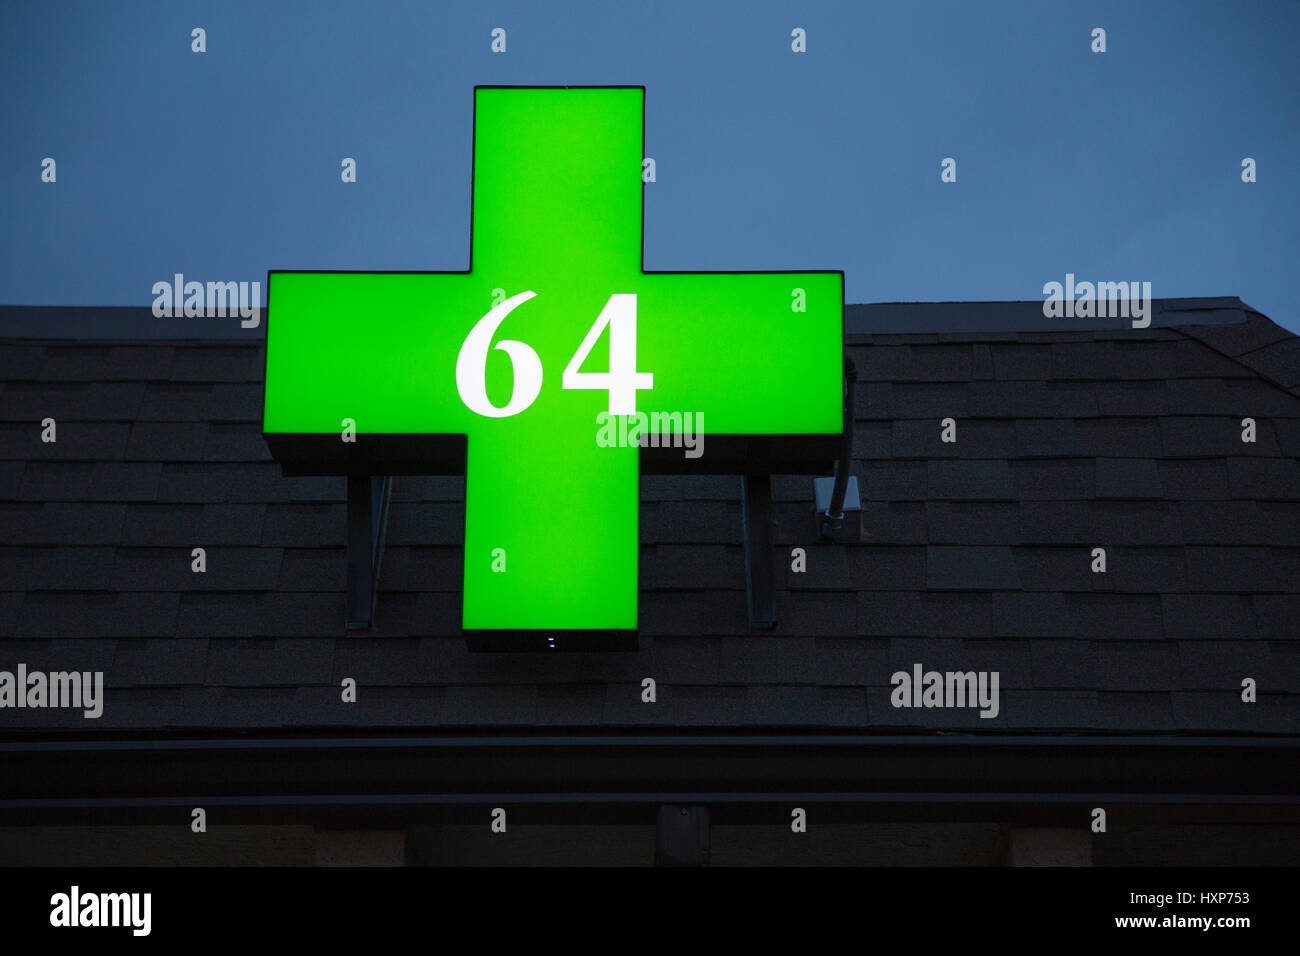 Eine grüne Cannabis Apotheke Apotheke Zeichen mit der Nummer "64", die den Colorado Marihuana Legalisierung Änderungsantrag, auch als Änderungsantrag 64 bekannt Stockfoto